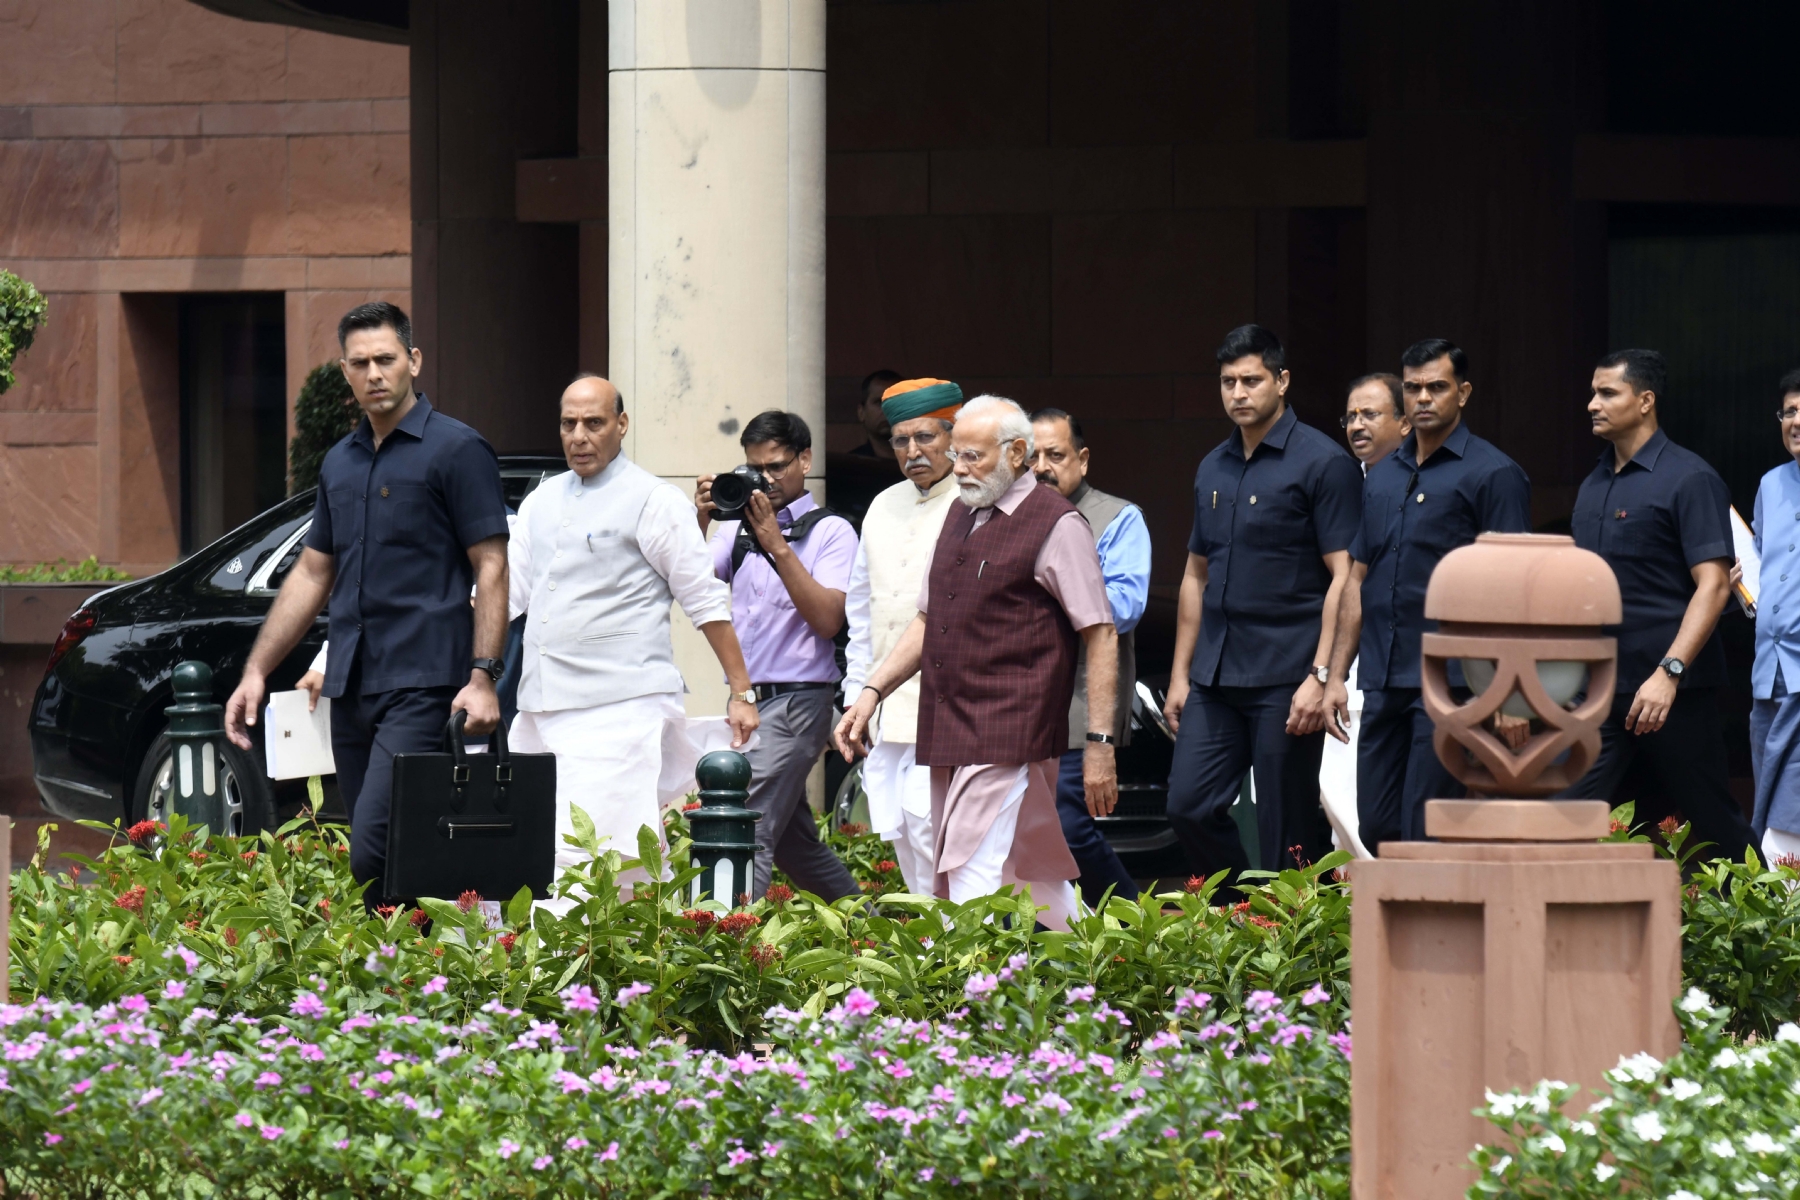 नई दिल्ली में मंगलवार 25 जुलाई 2023 को भाजपा संसदीय दल की बैठक के बाद आते हुए। प्रधानमंत्री नरेन्द्र मोदी और केंद्रीय मंत्री राजनाथ सिंह और प्रल्हाद जोशी व अन्या। हिन्दुस्थान समाचार/ फोटो गणेश बिष्ट